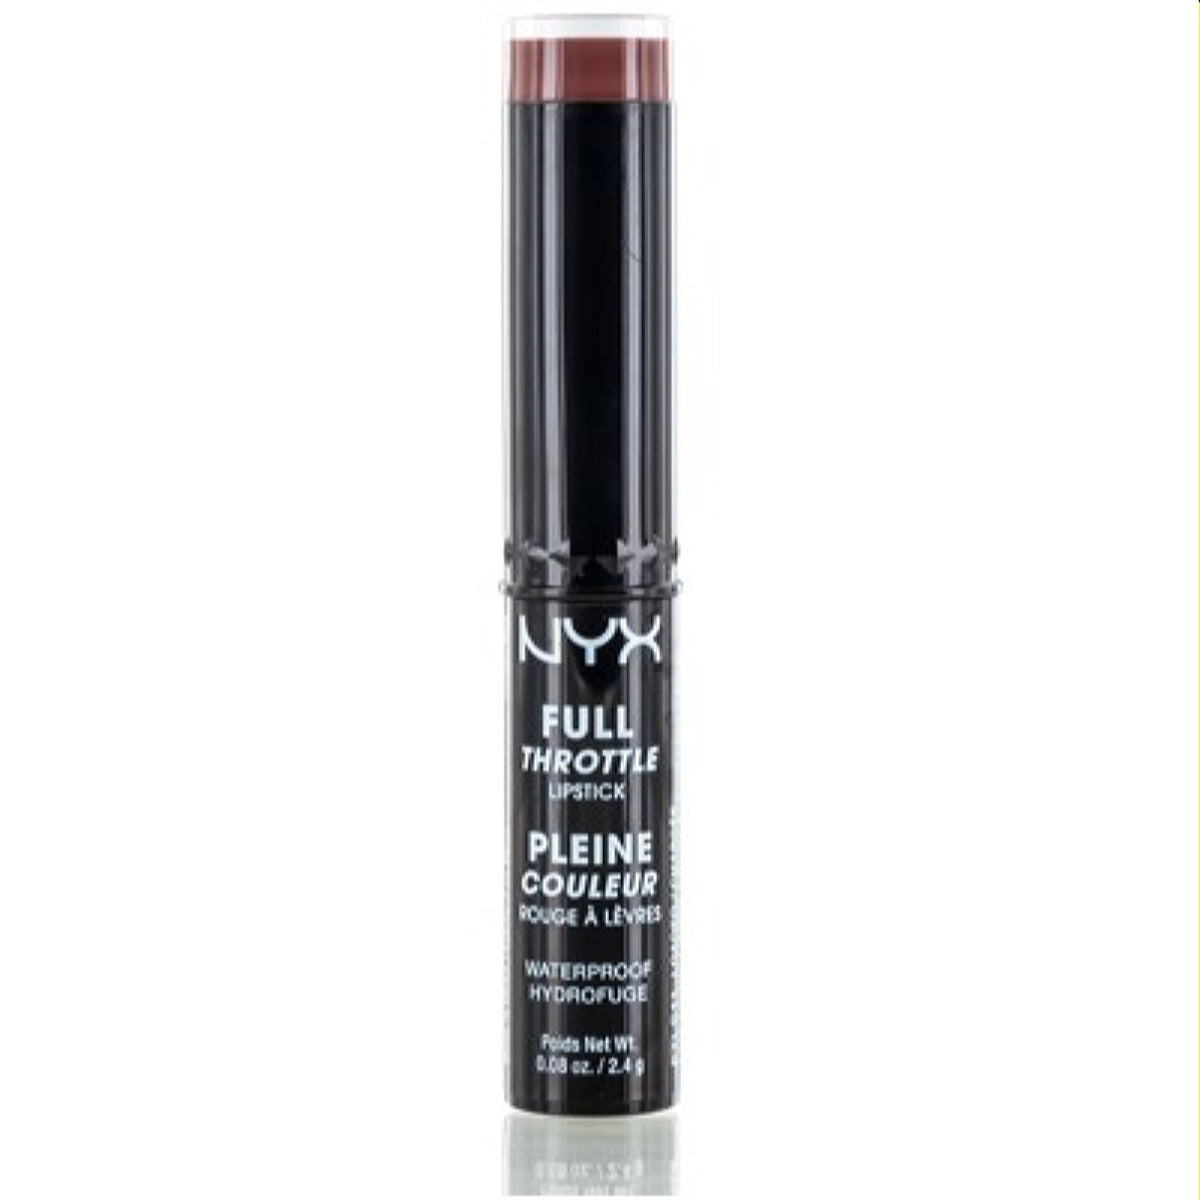 Nyx Full Throttle Lipstick Loaded .08 Oz (2.4 Ml)  